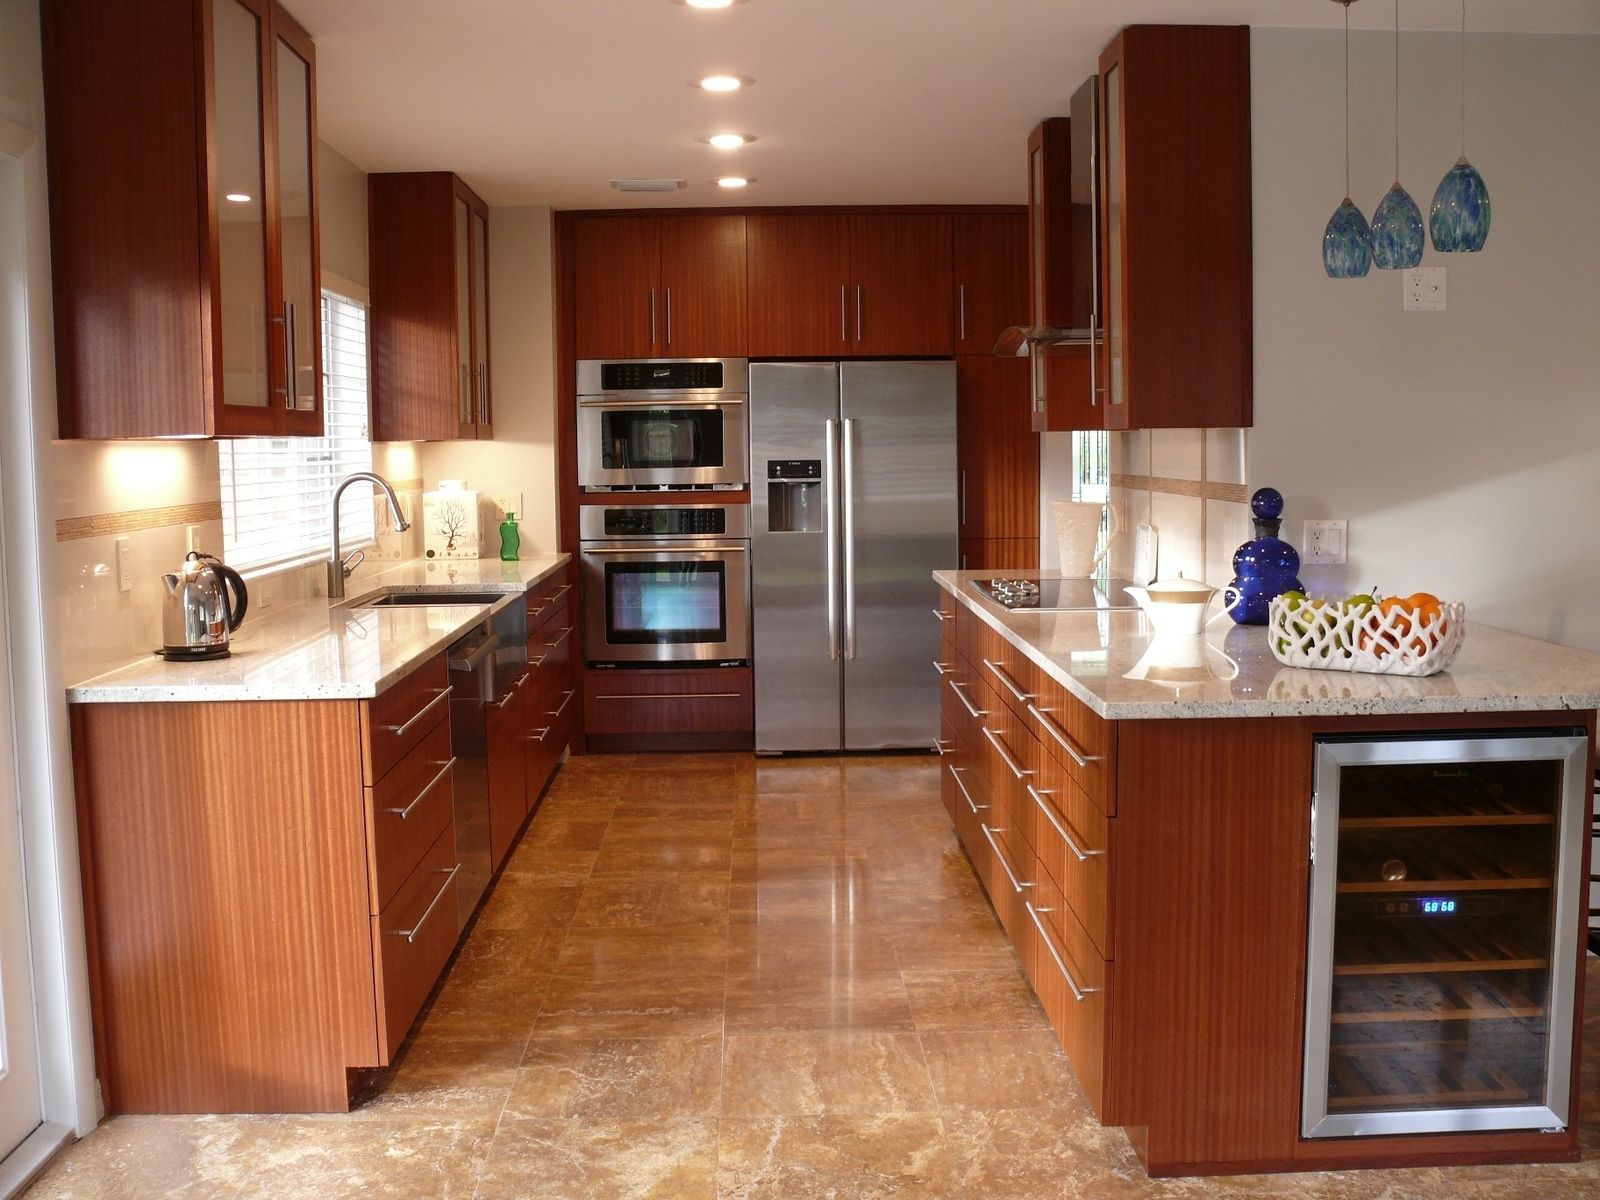 40+ Best Kitchen Cabinet Design Ideas